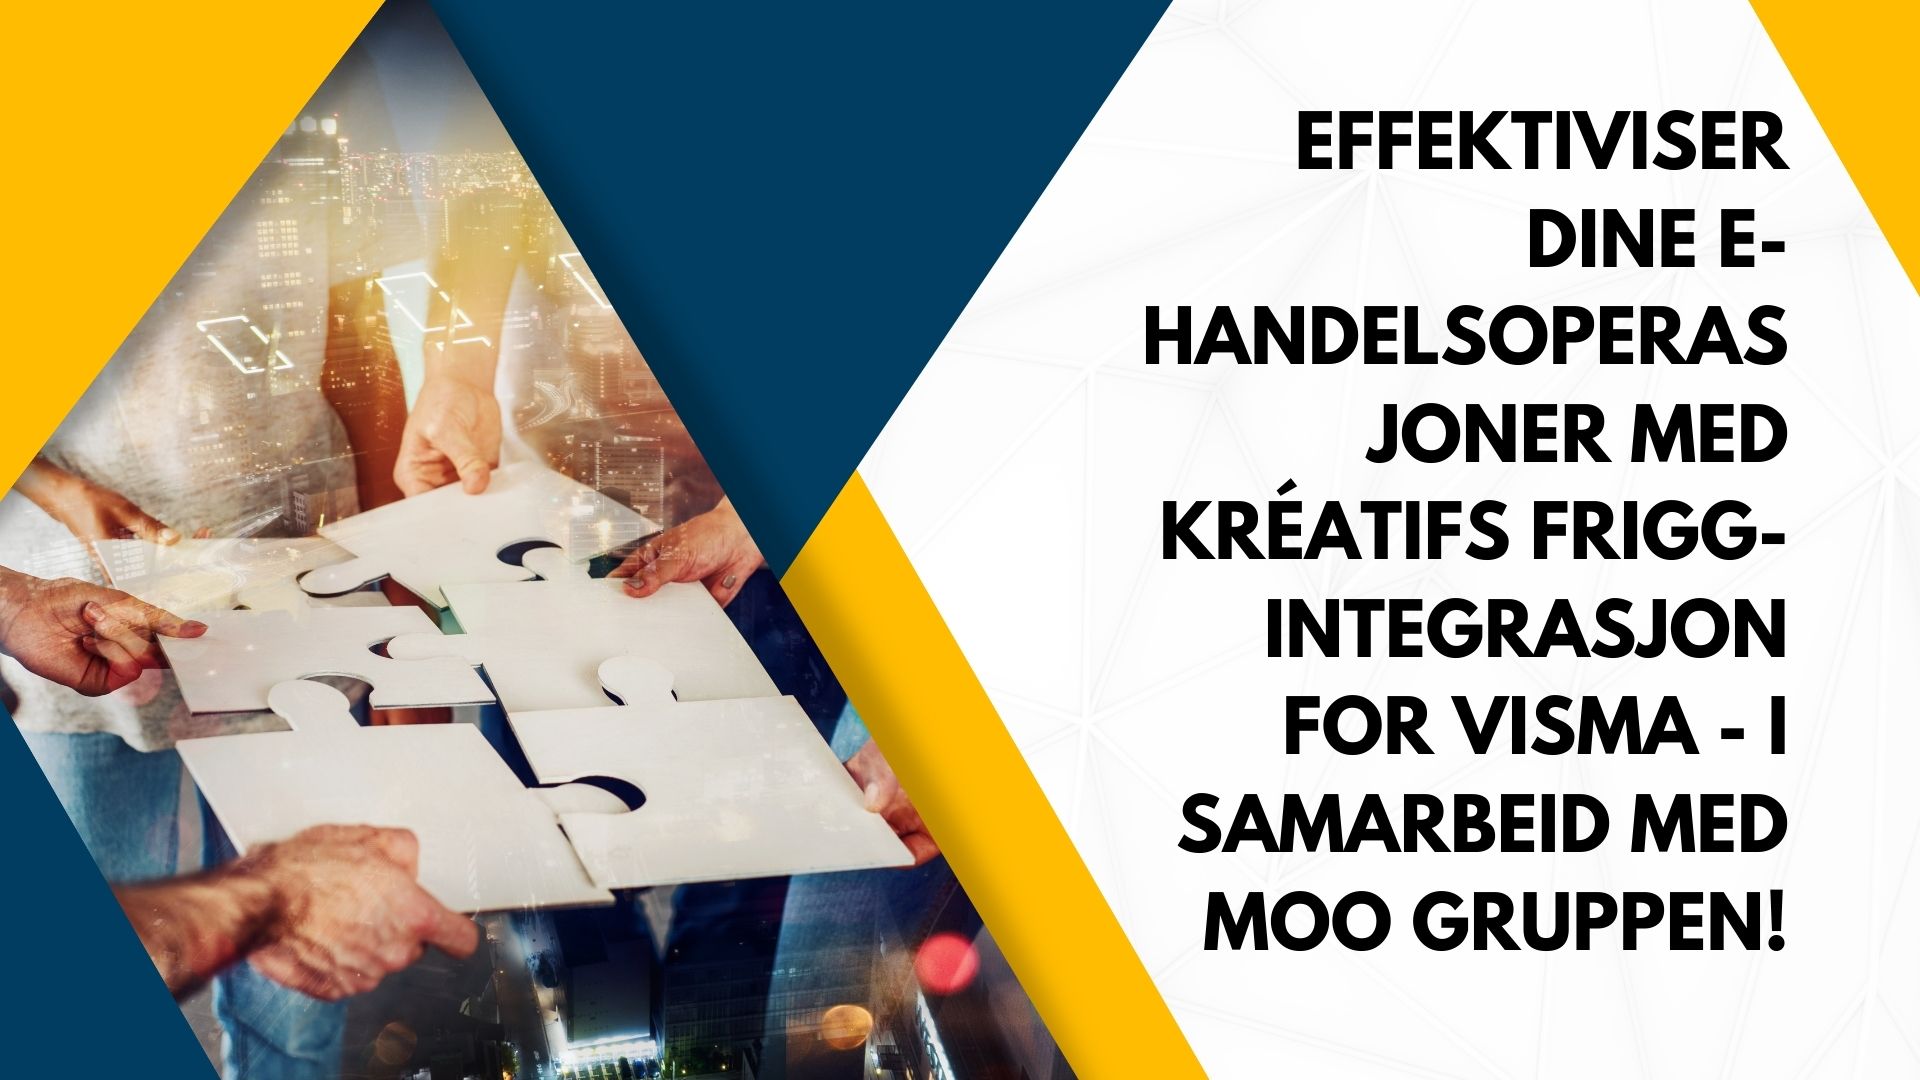 Effektiviser dine e-handelsoperasjoner med Kréatifs Frigg-integrasjon for Visma - i samarbeid med Moo Gruppen